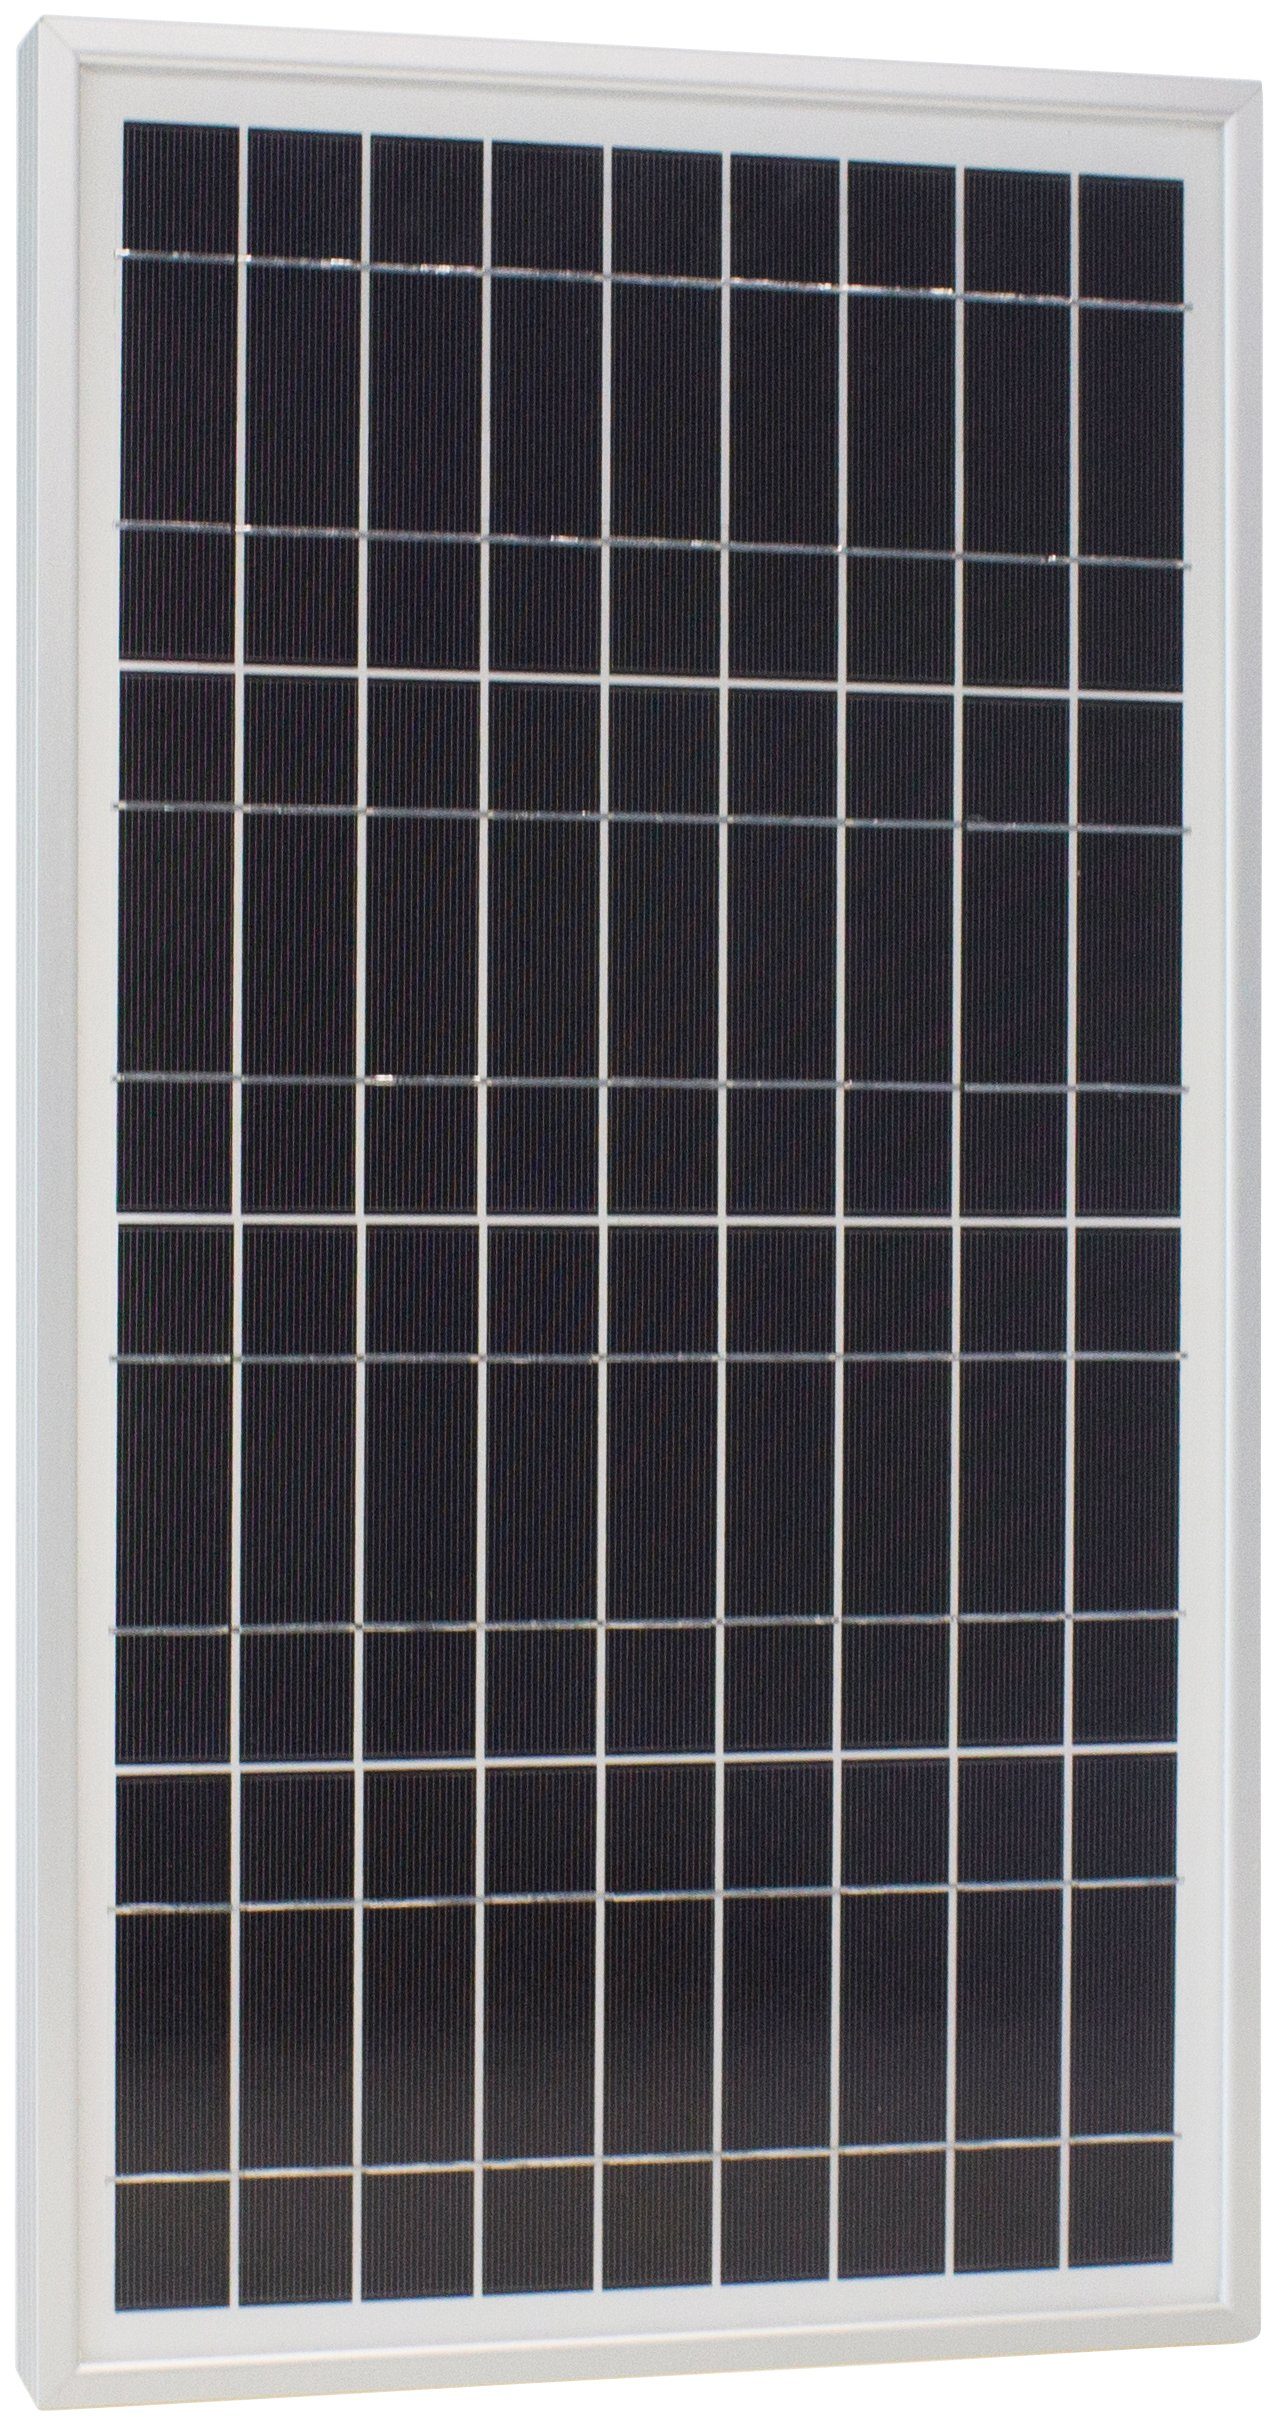 Plus W, Sun Phaesun 20 Schutz IP65 12 S, VDC, 20 Solarmodul